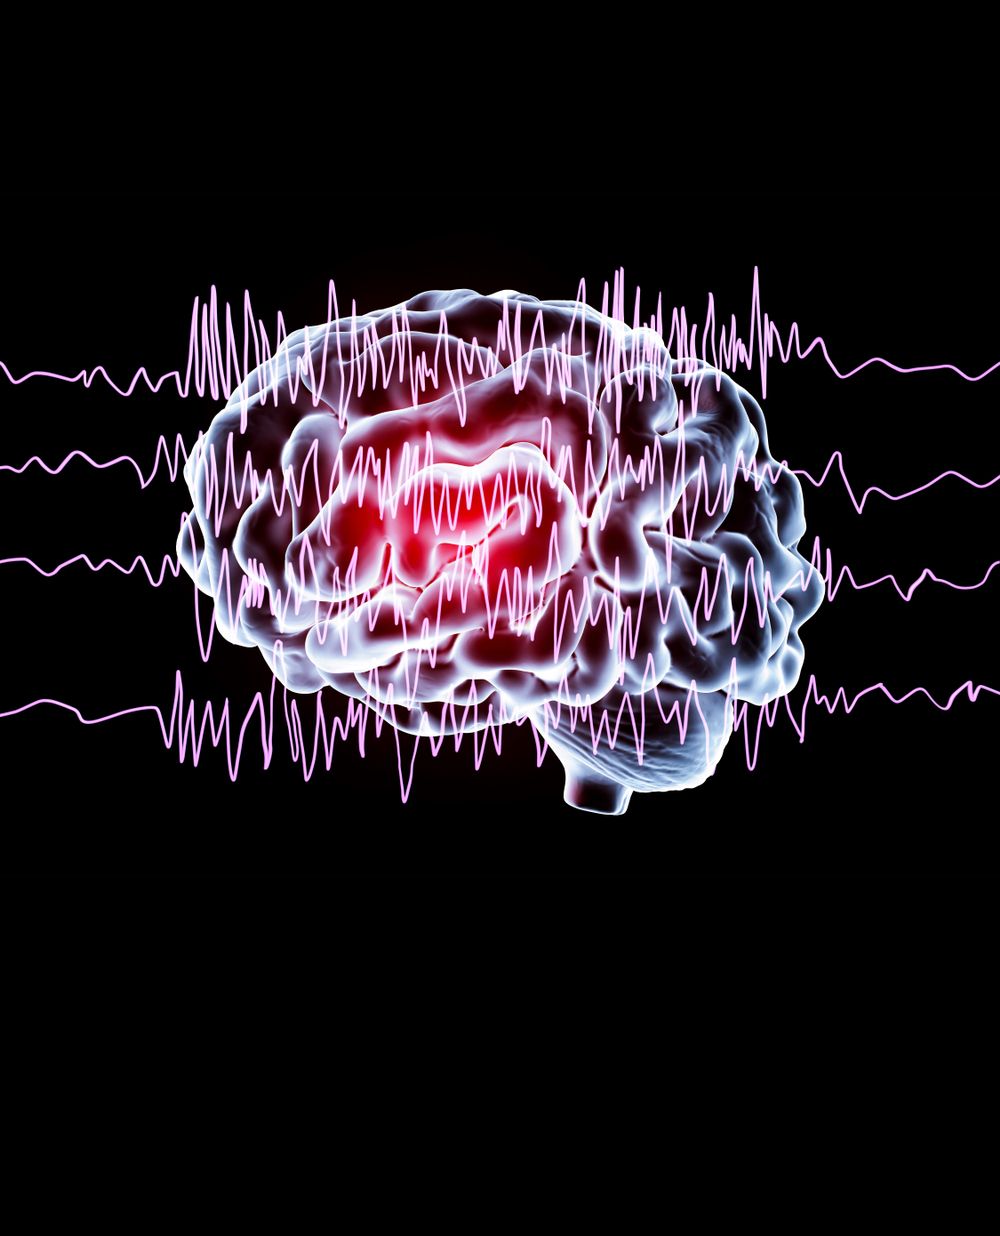 Intelligenza artificiale identifica lesioni cerebrali “Invisibili”. Ecco come